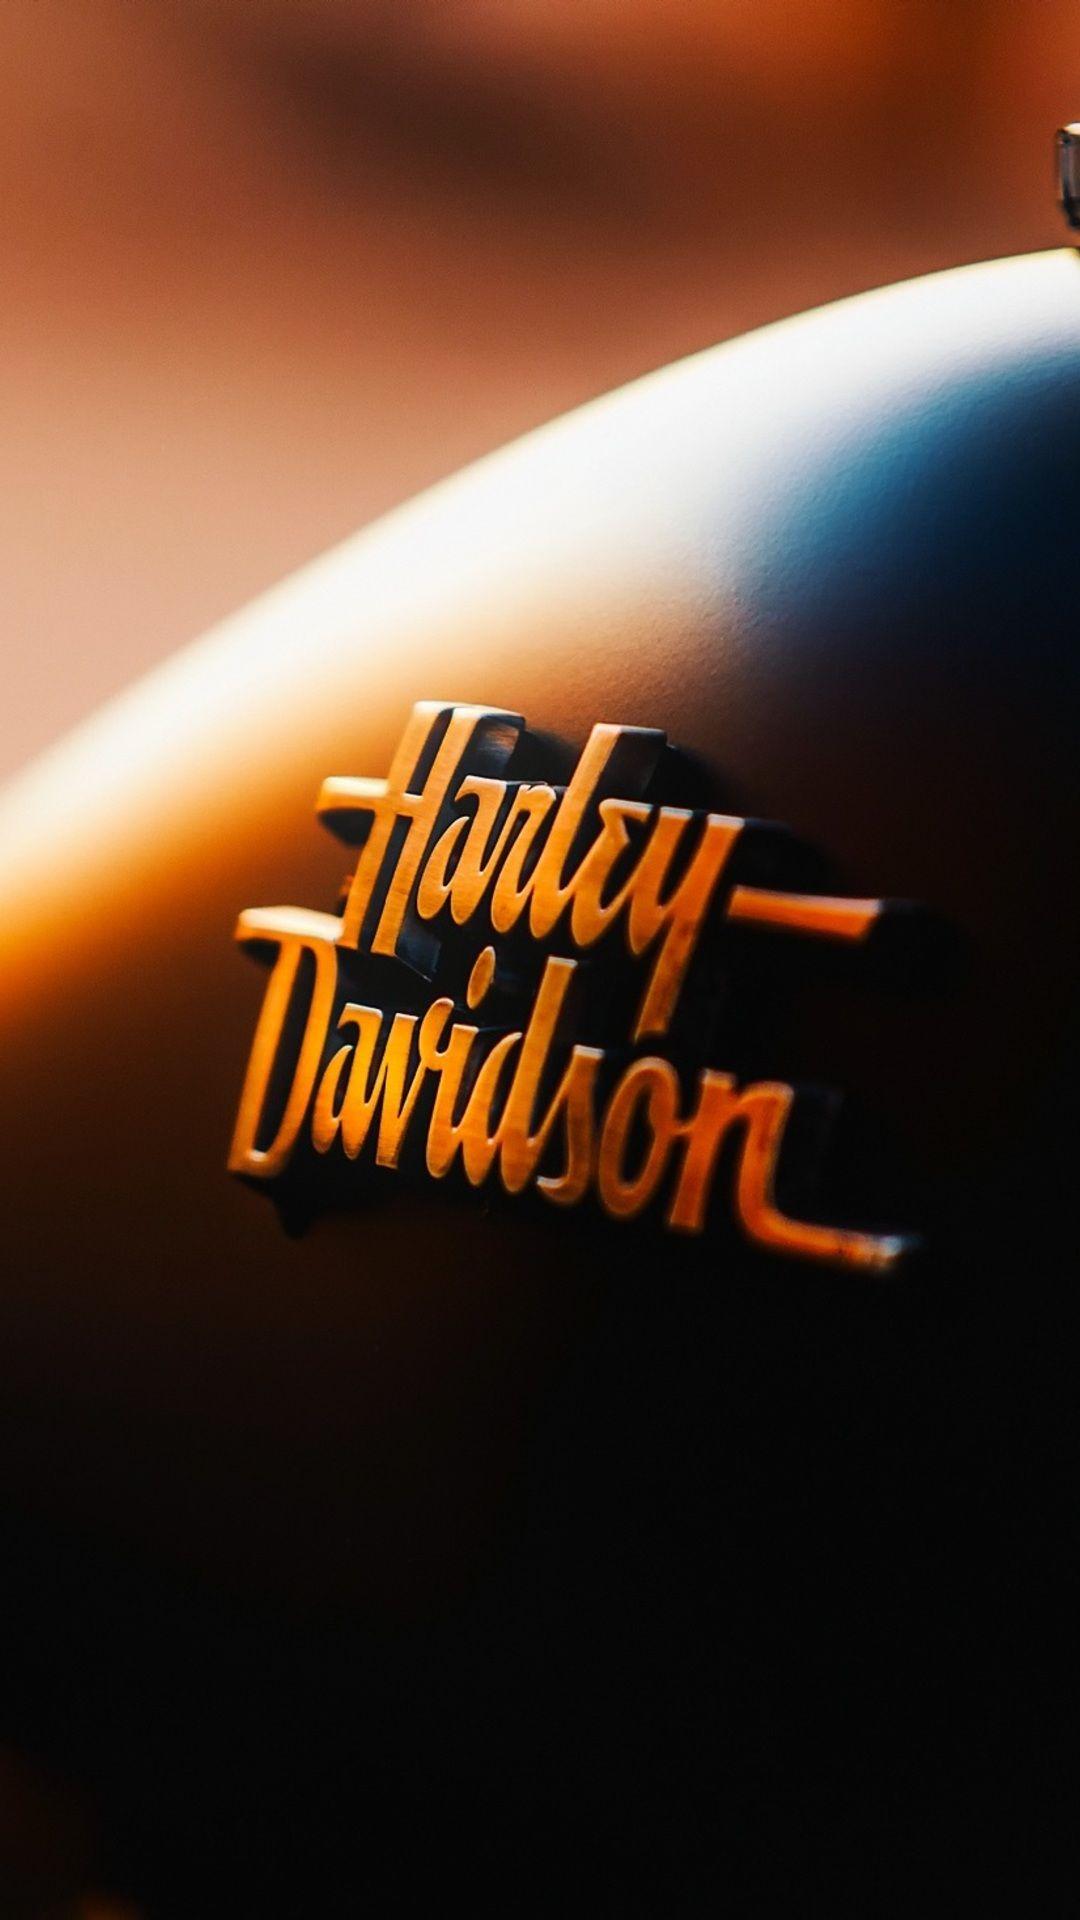 Harley Davidson Logo Bike iPhone 6s, 6 Plus, Pixel xl